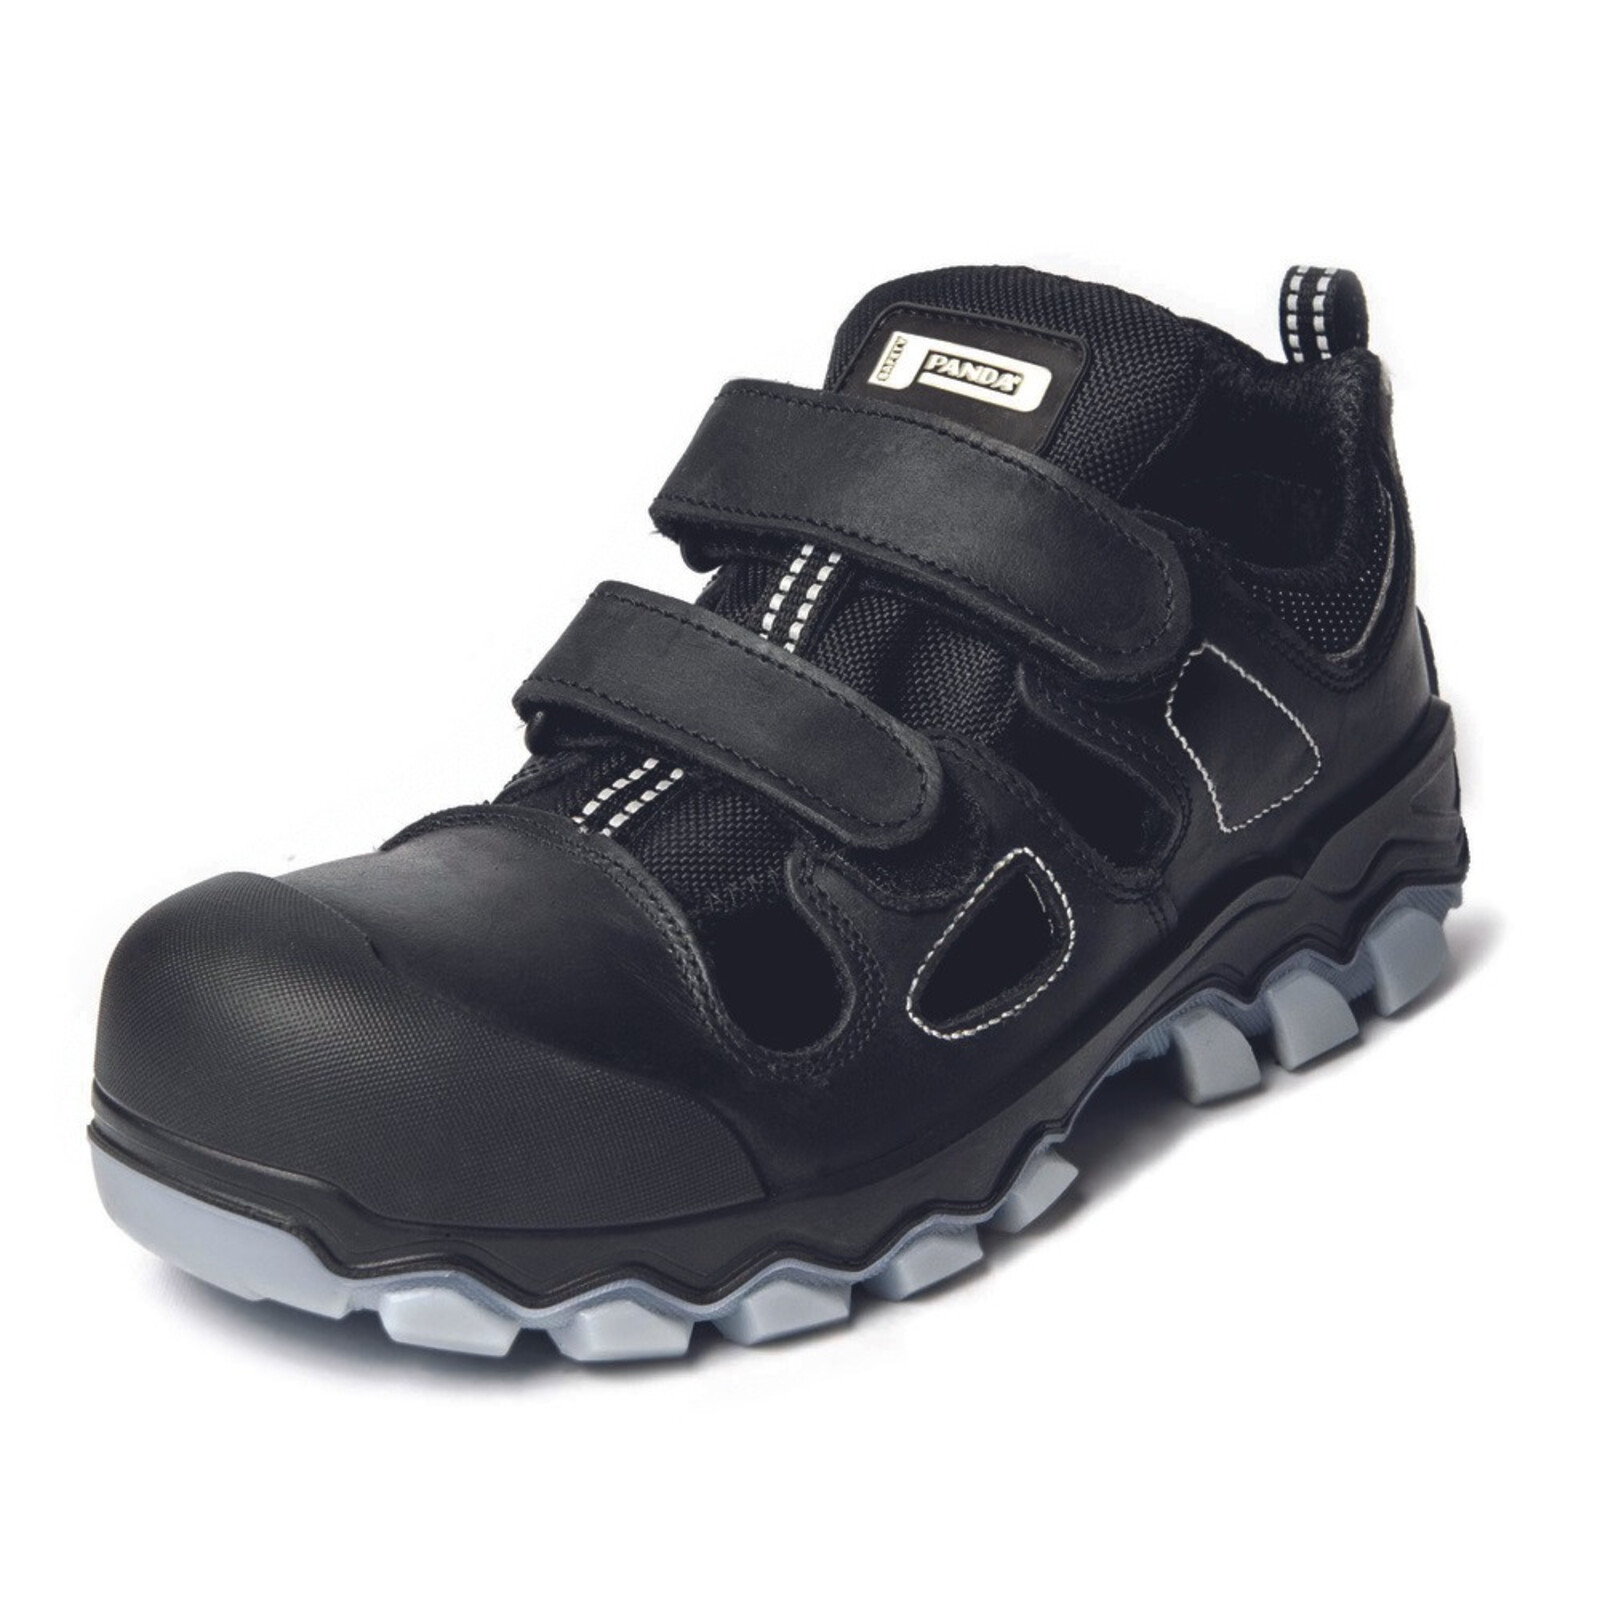 Bezpečnostné sandále Panda Techo No. Two MF S1P SRC - veľkosť: 47, farba: čierna/sivá